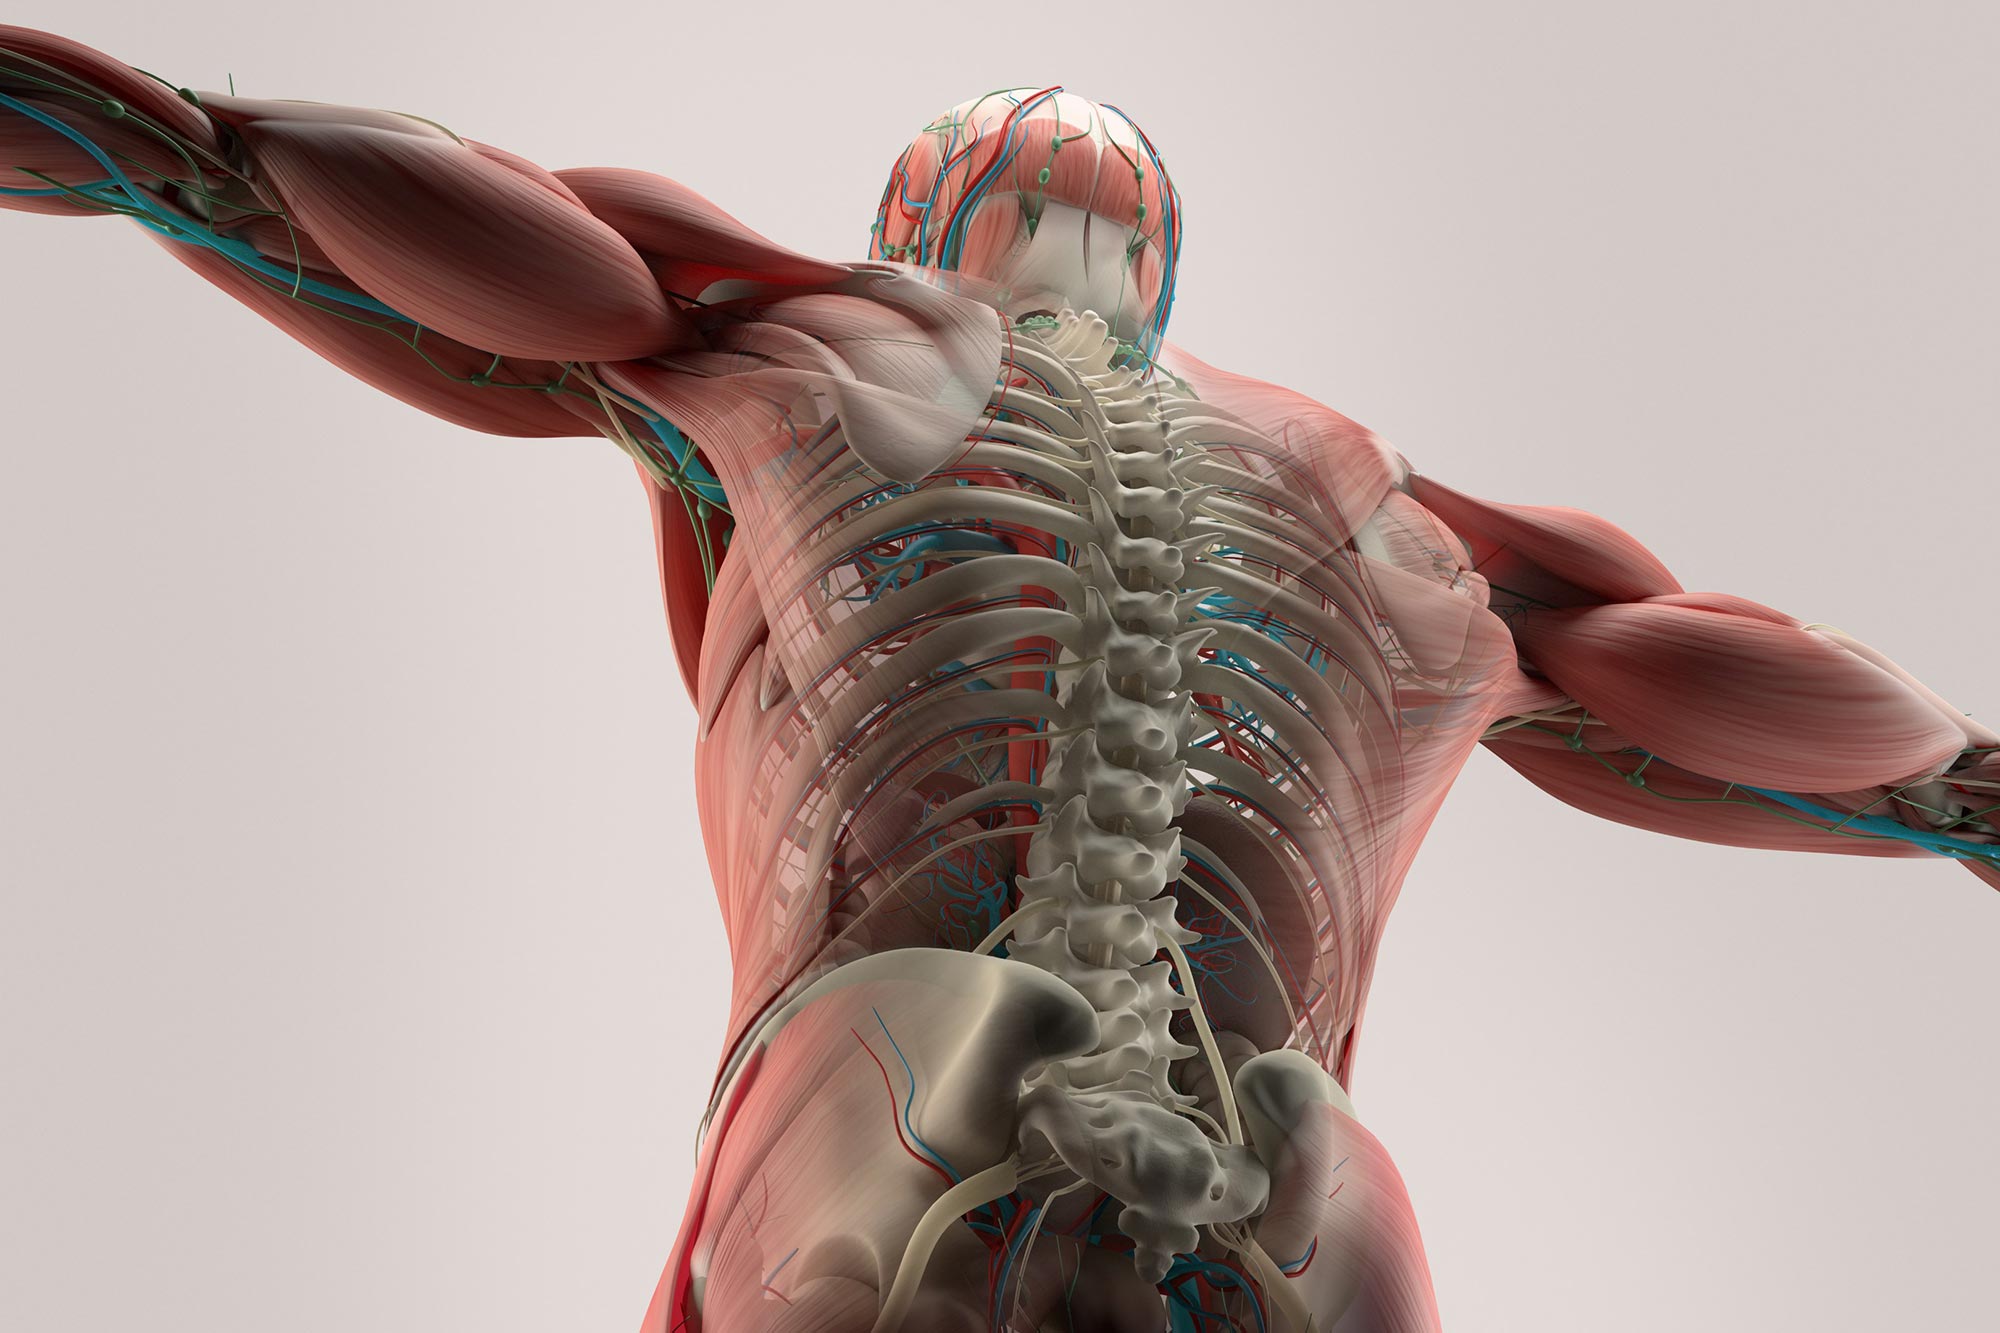 Sebuah studi baru mengungkapkan penyebab kelemahan otot